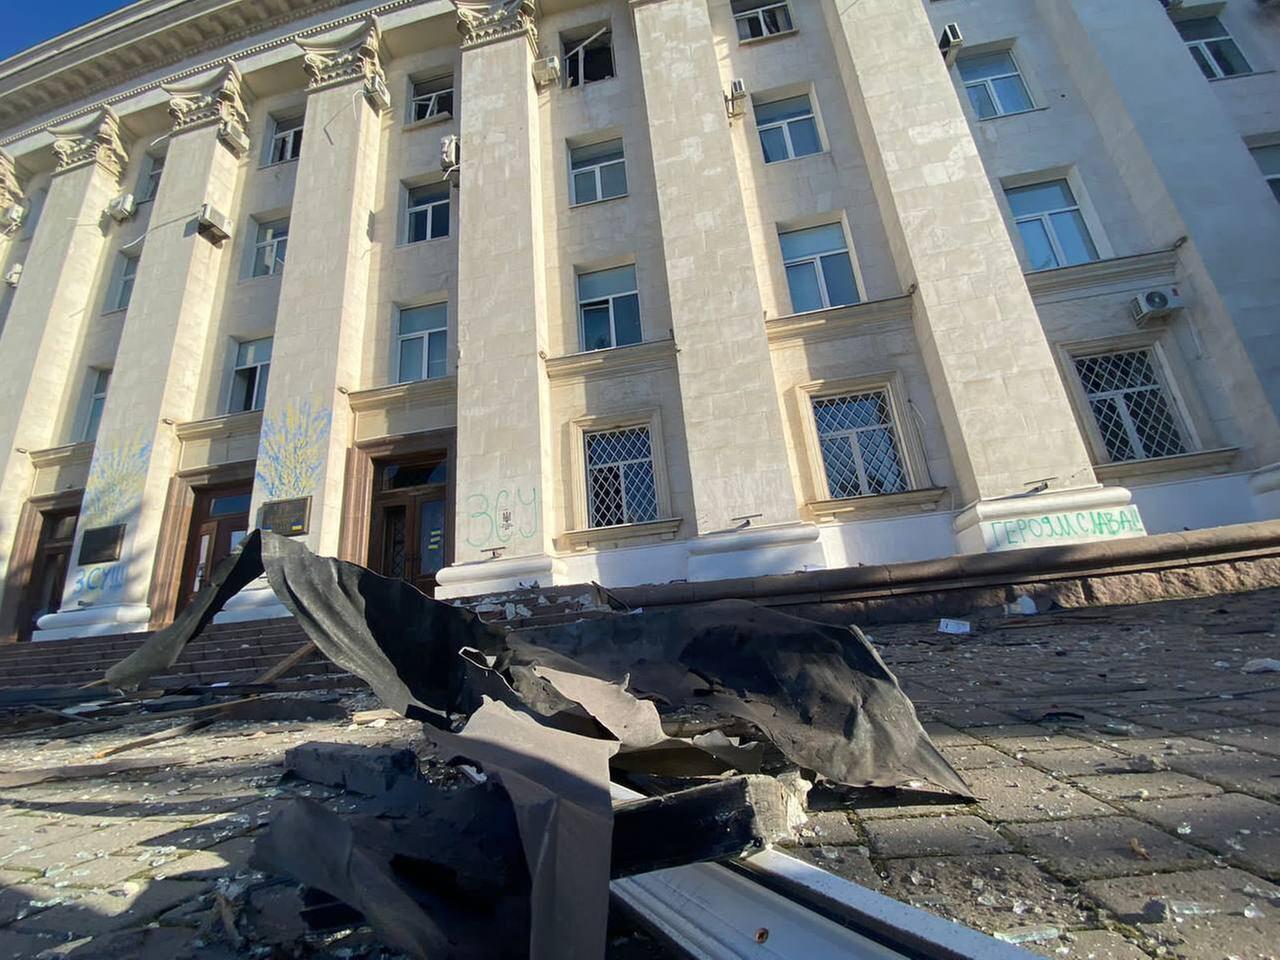 Trümmer liegen nach einem russischen Angriff auf einer Straße in Cherson in der Ukraine.